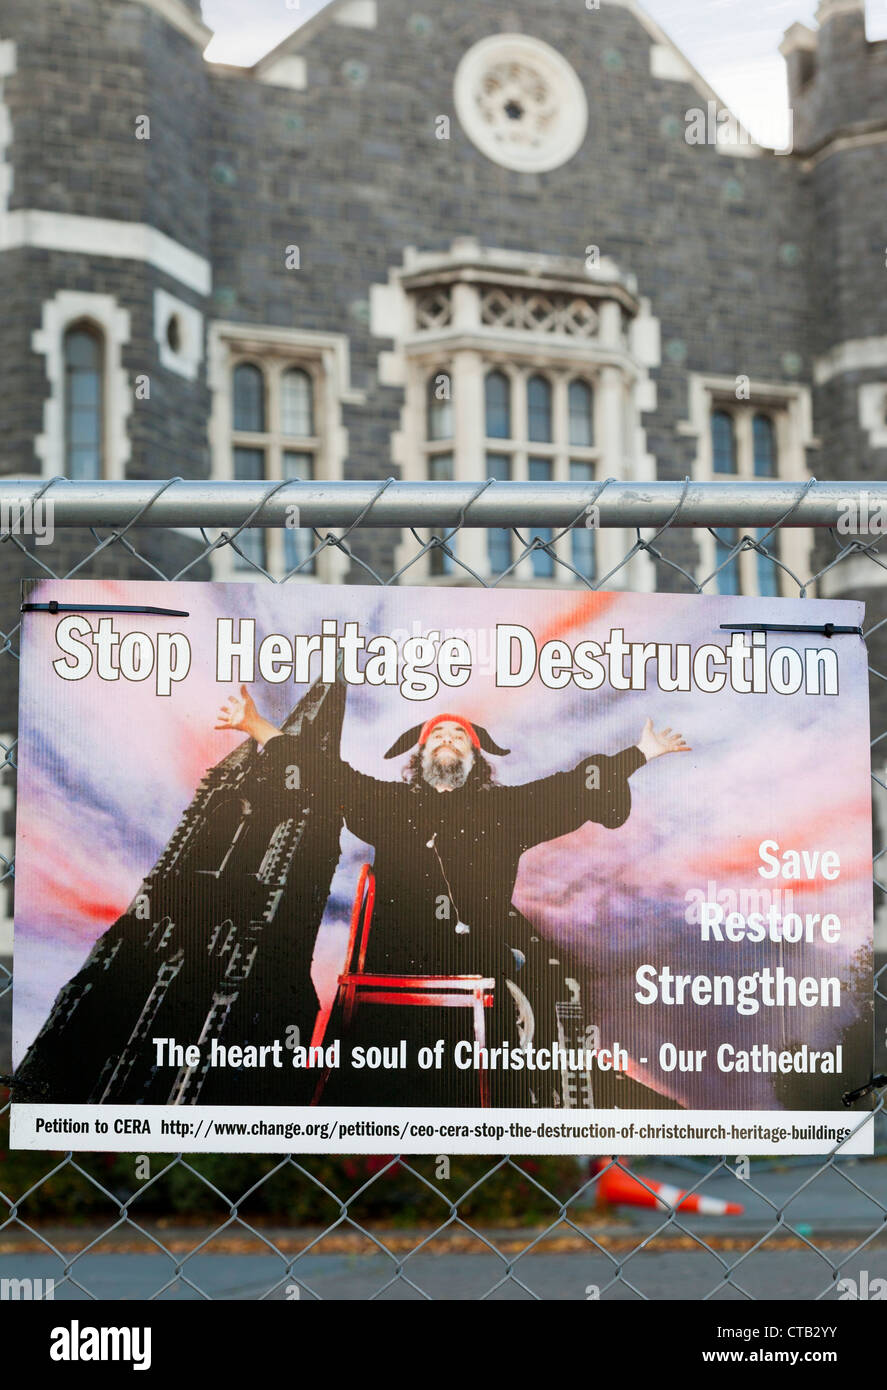 Nach dem Erdbeben Christchurch, Neuseeland - Schild an der roten Zone Stockfoto